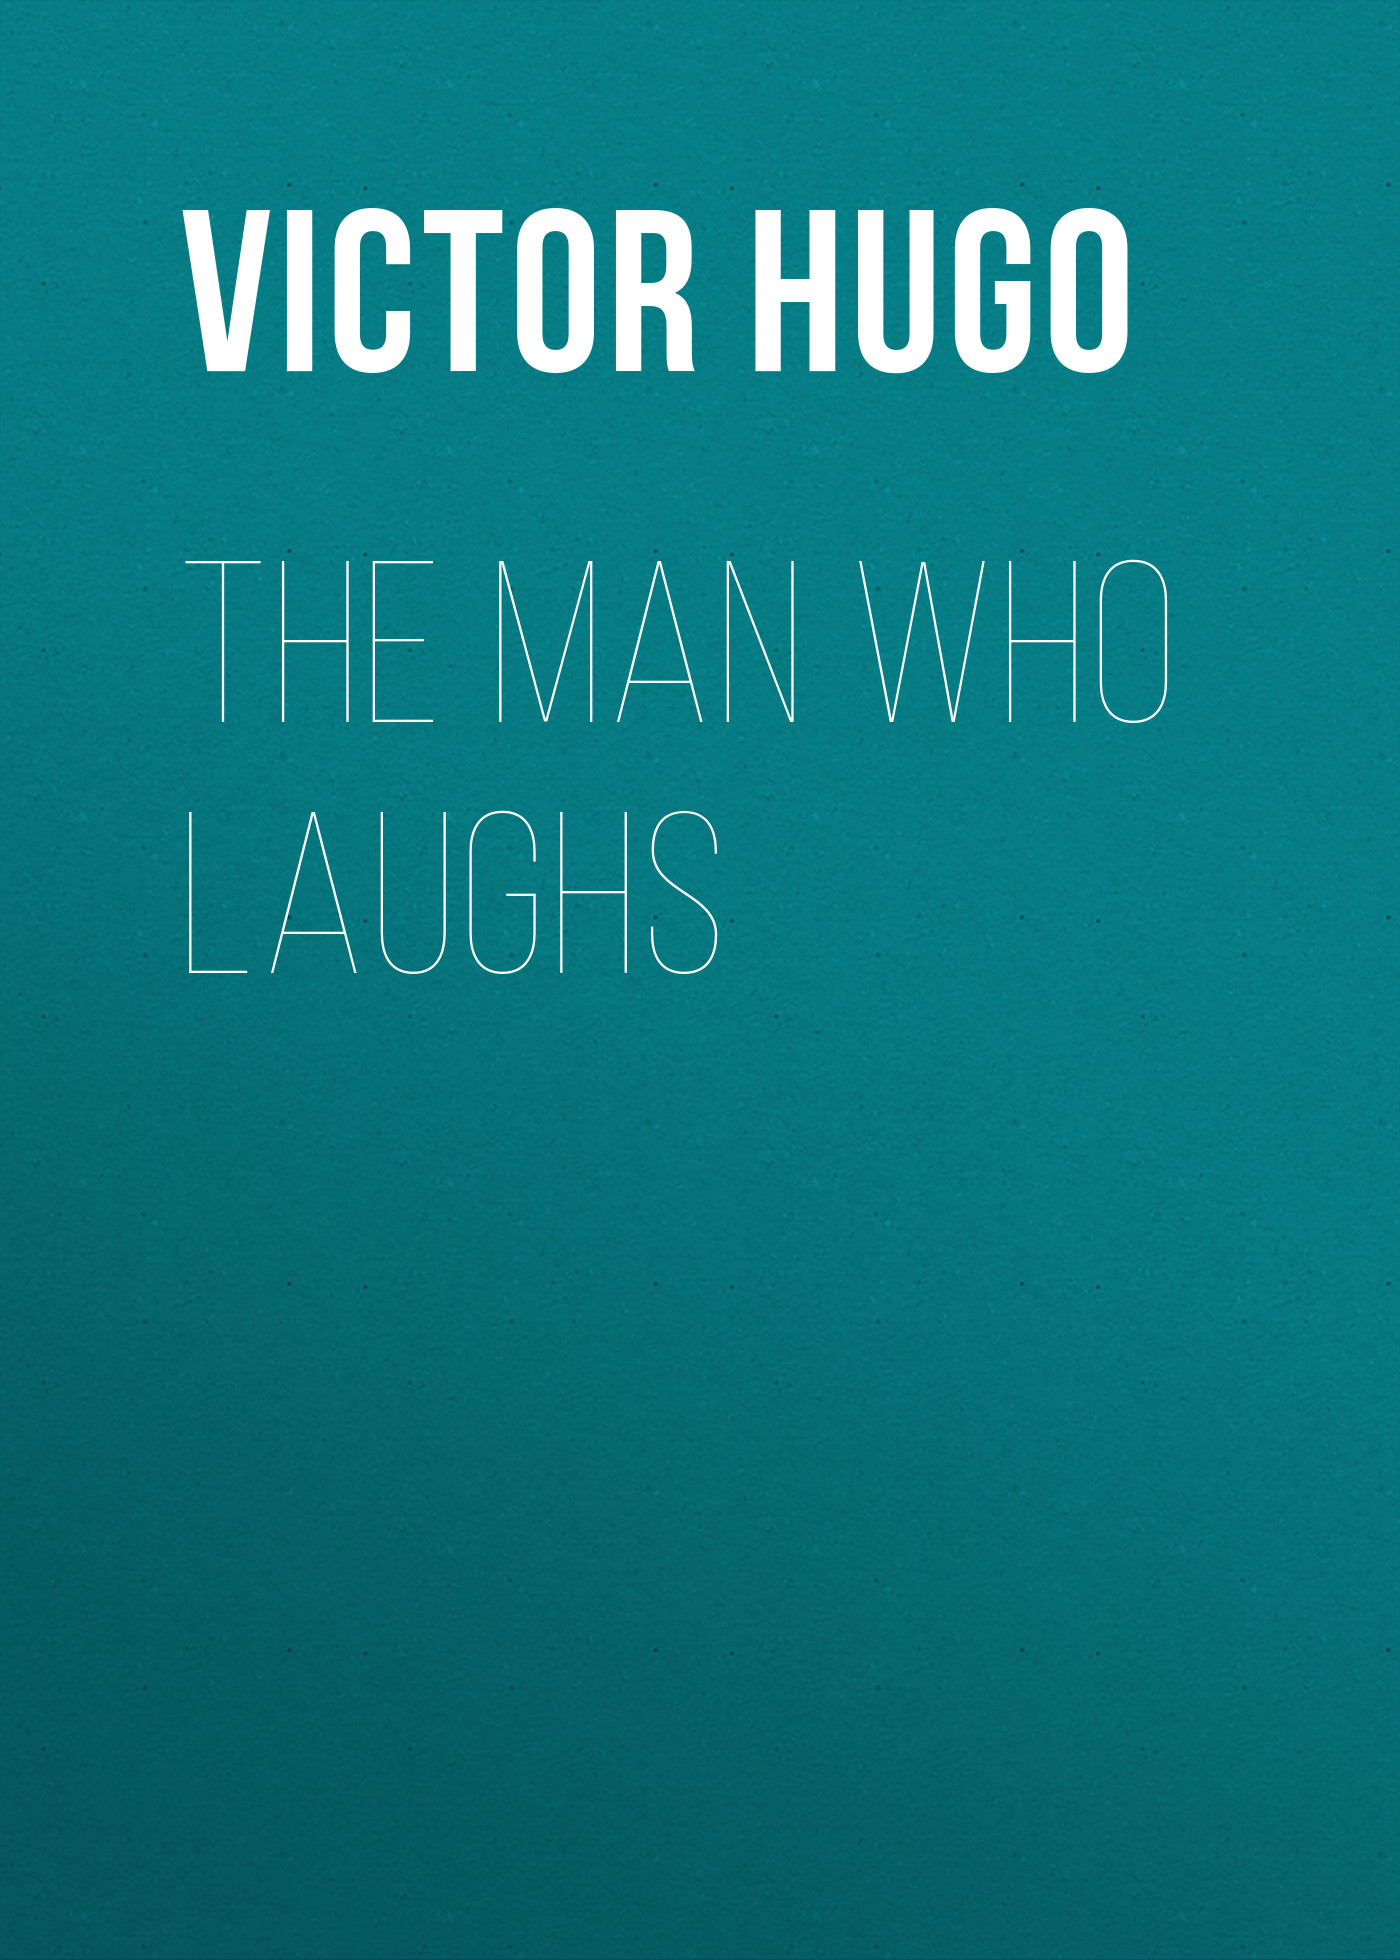 Книга The Man Who Laughs из серии , созданная Victor Hugo, может относится к жанру Литература 19 века, Зарубежная старинная литература, Зарубежная классика. Стоимость электронной книги The Man Who Laughs с идентификатором 25229228 составляет 0 руб.